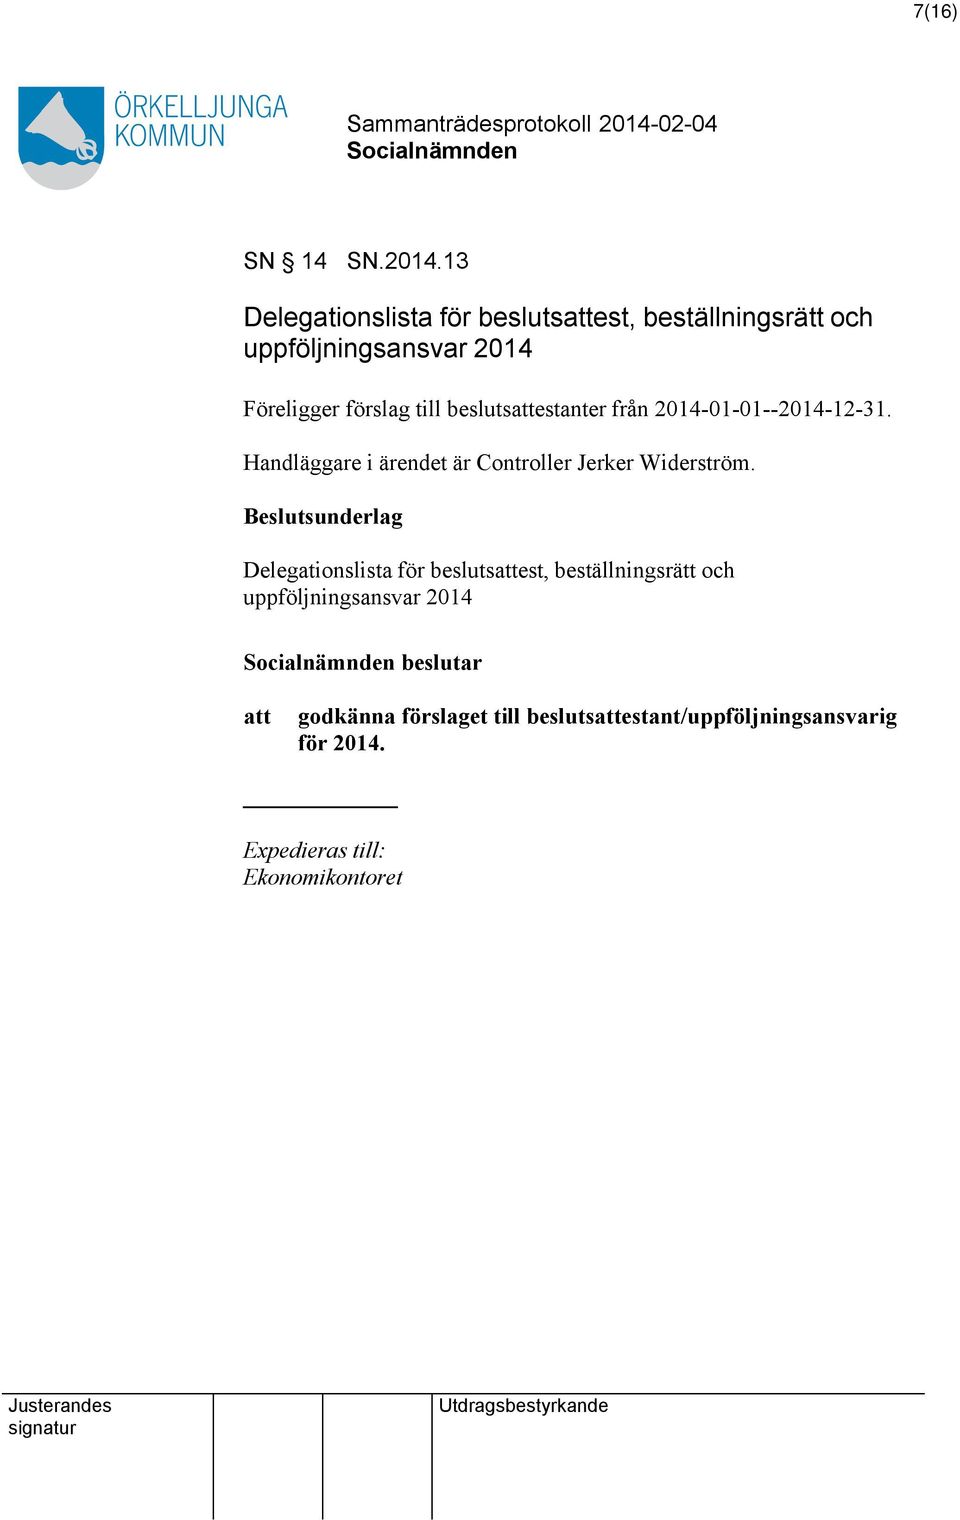 beslutsestanter från 2014-01-01--2014-12-31. Handläggare i ärendet är Controller Jerker Widerström.